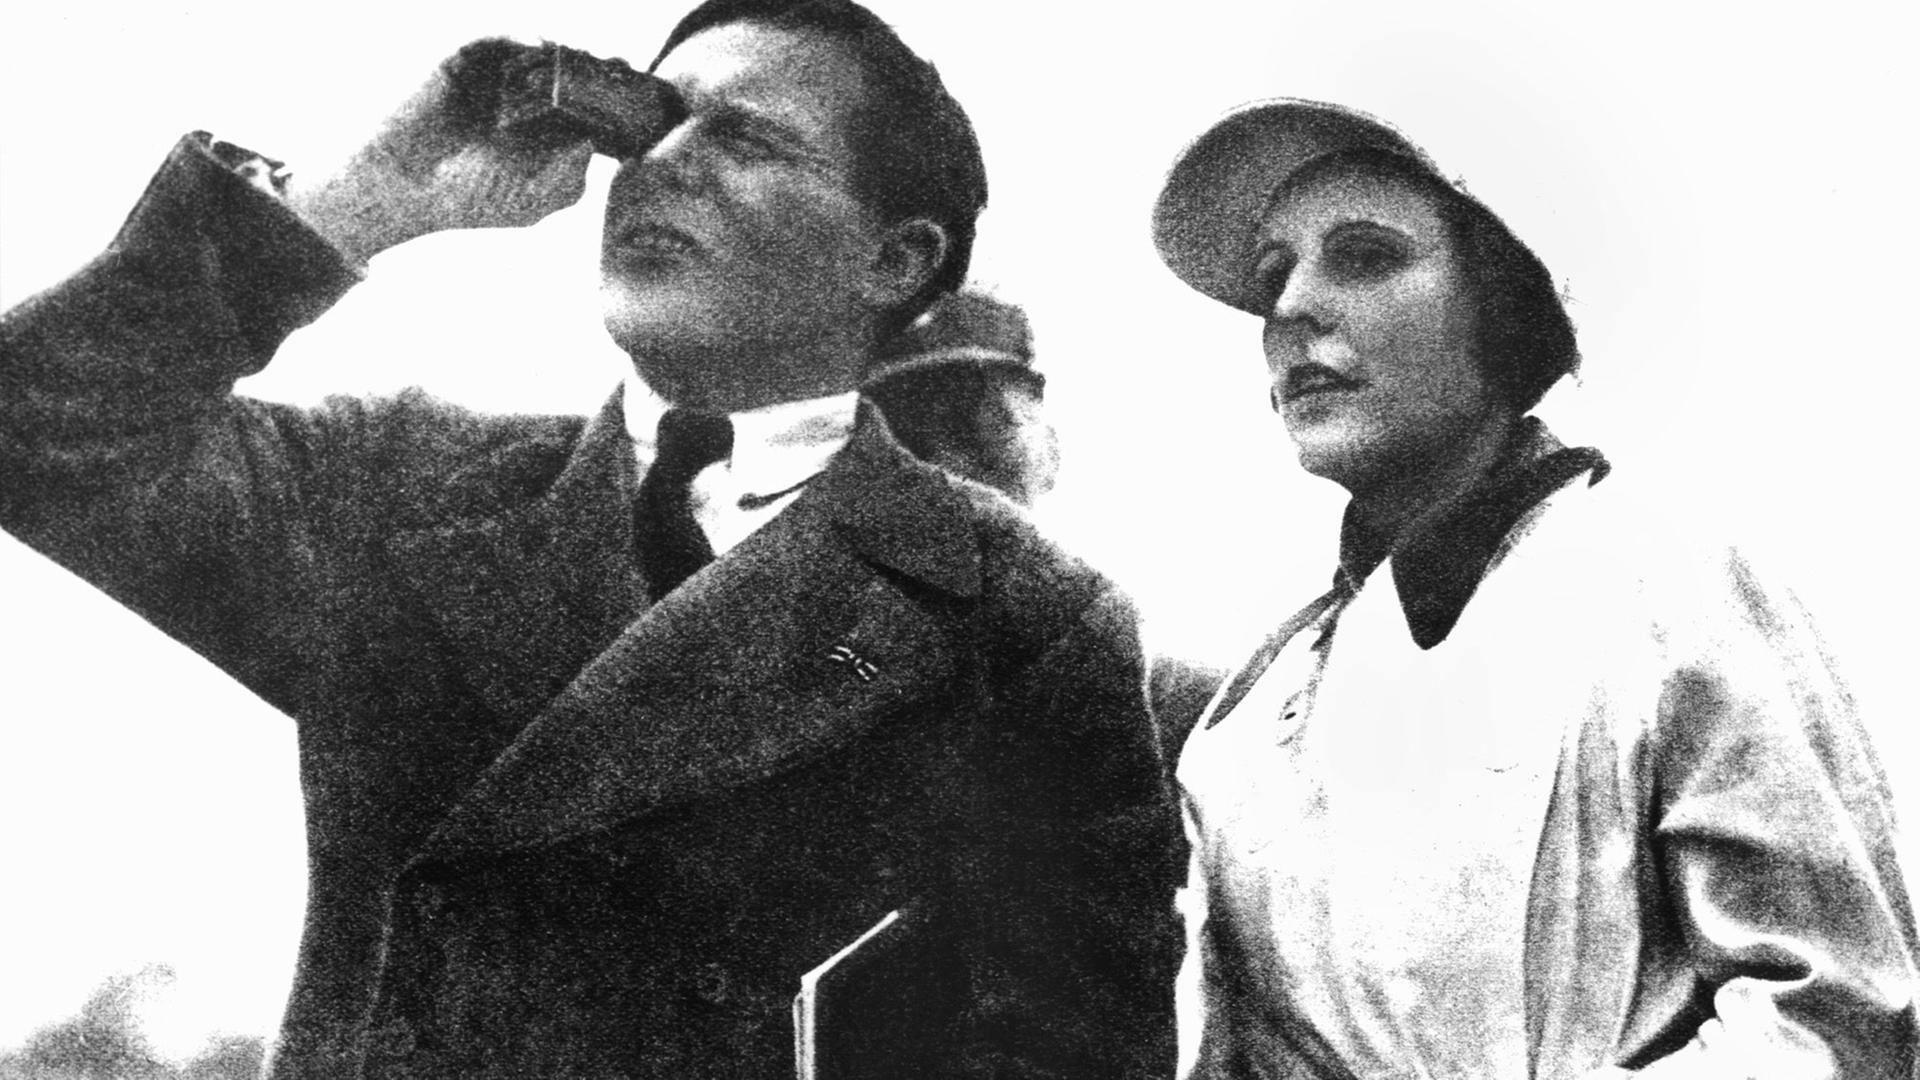 Die Regisseurin Leni Riefenstahl und der Kameramann Sepp Allgeier während des NSDAP-Parteitags im Jahr 1934 in Nürnberg.